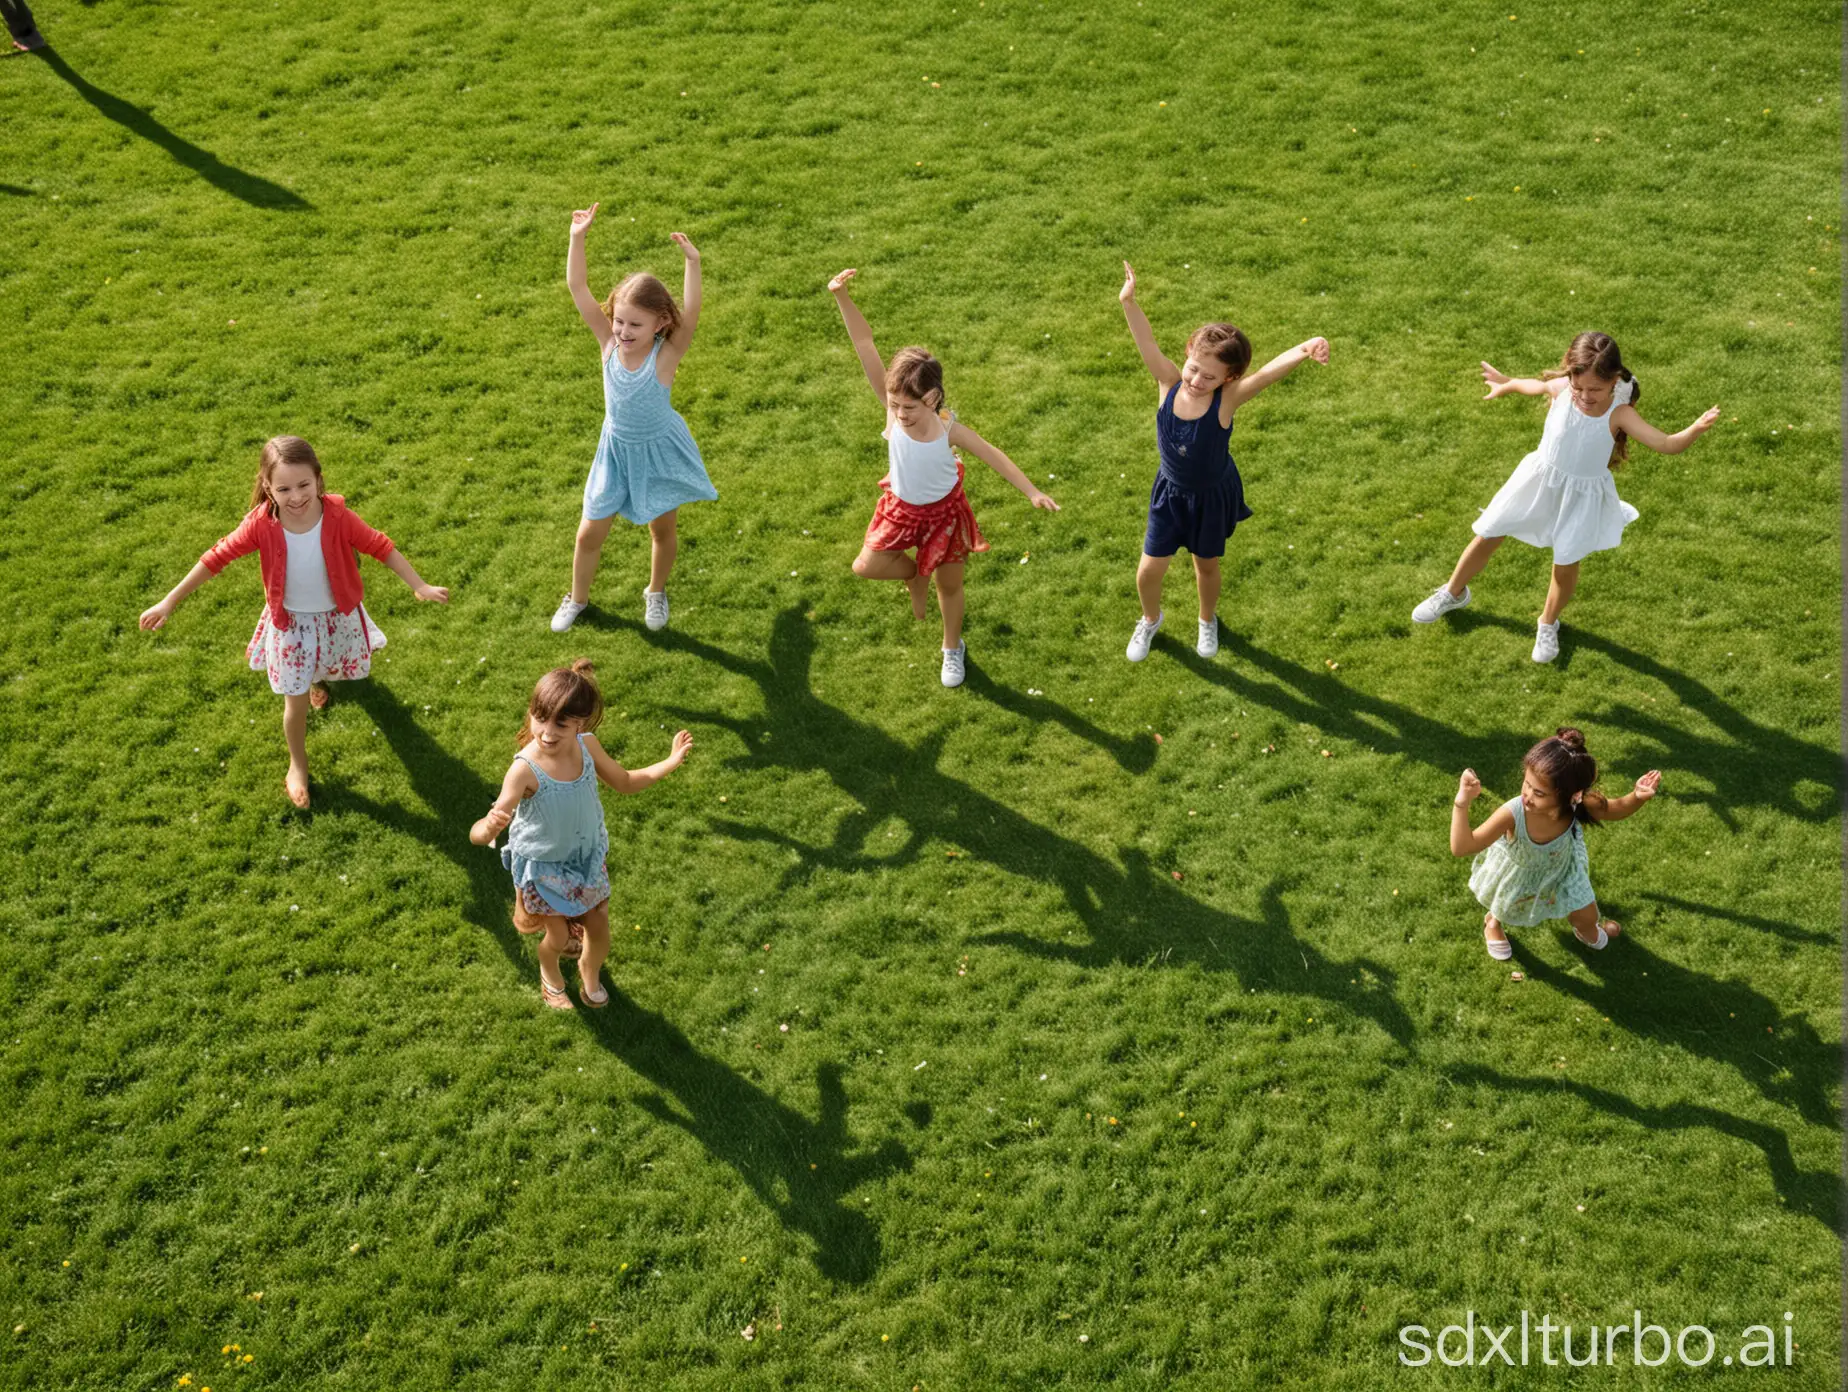 Joyful-Children-Dancing-on-Green-Grass